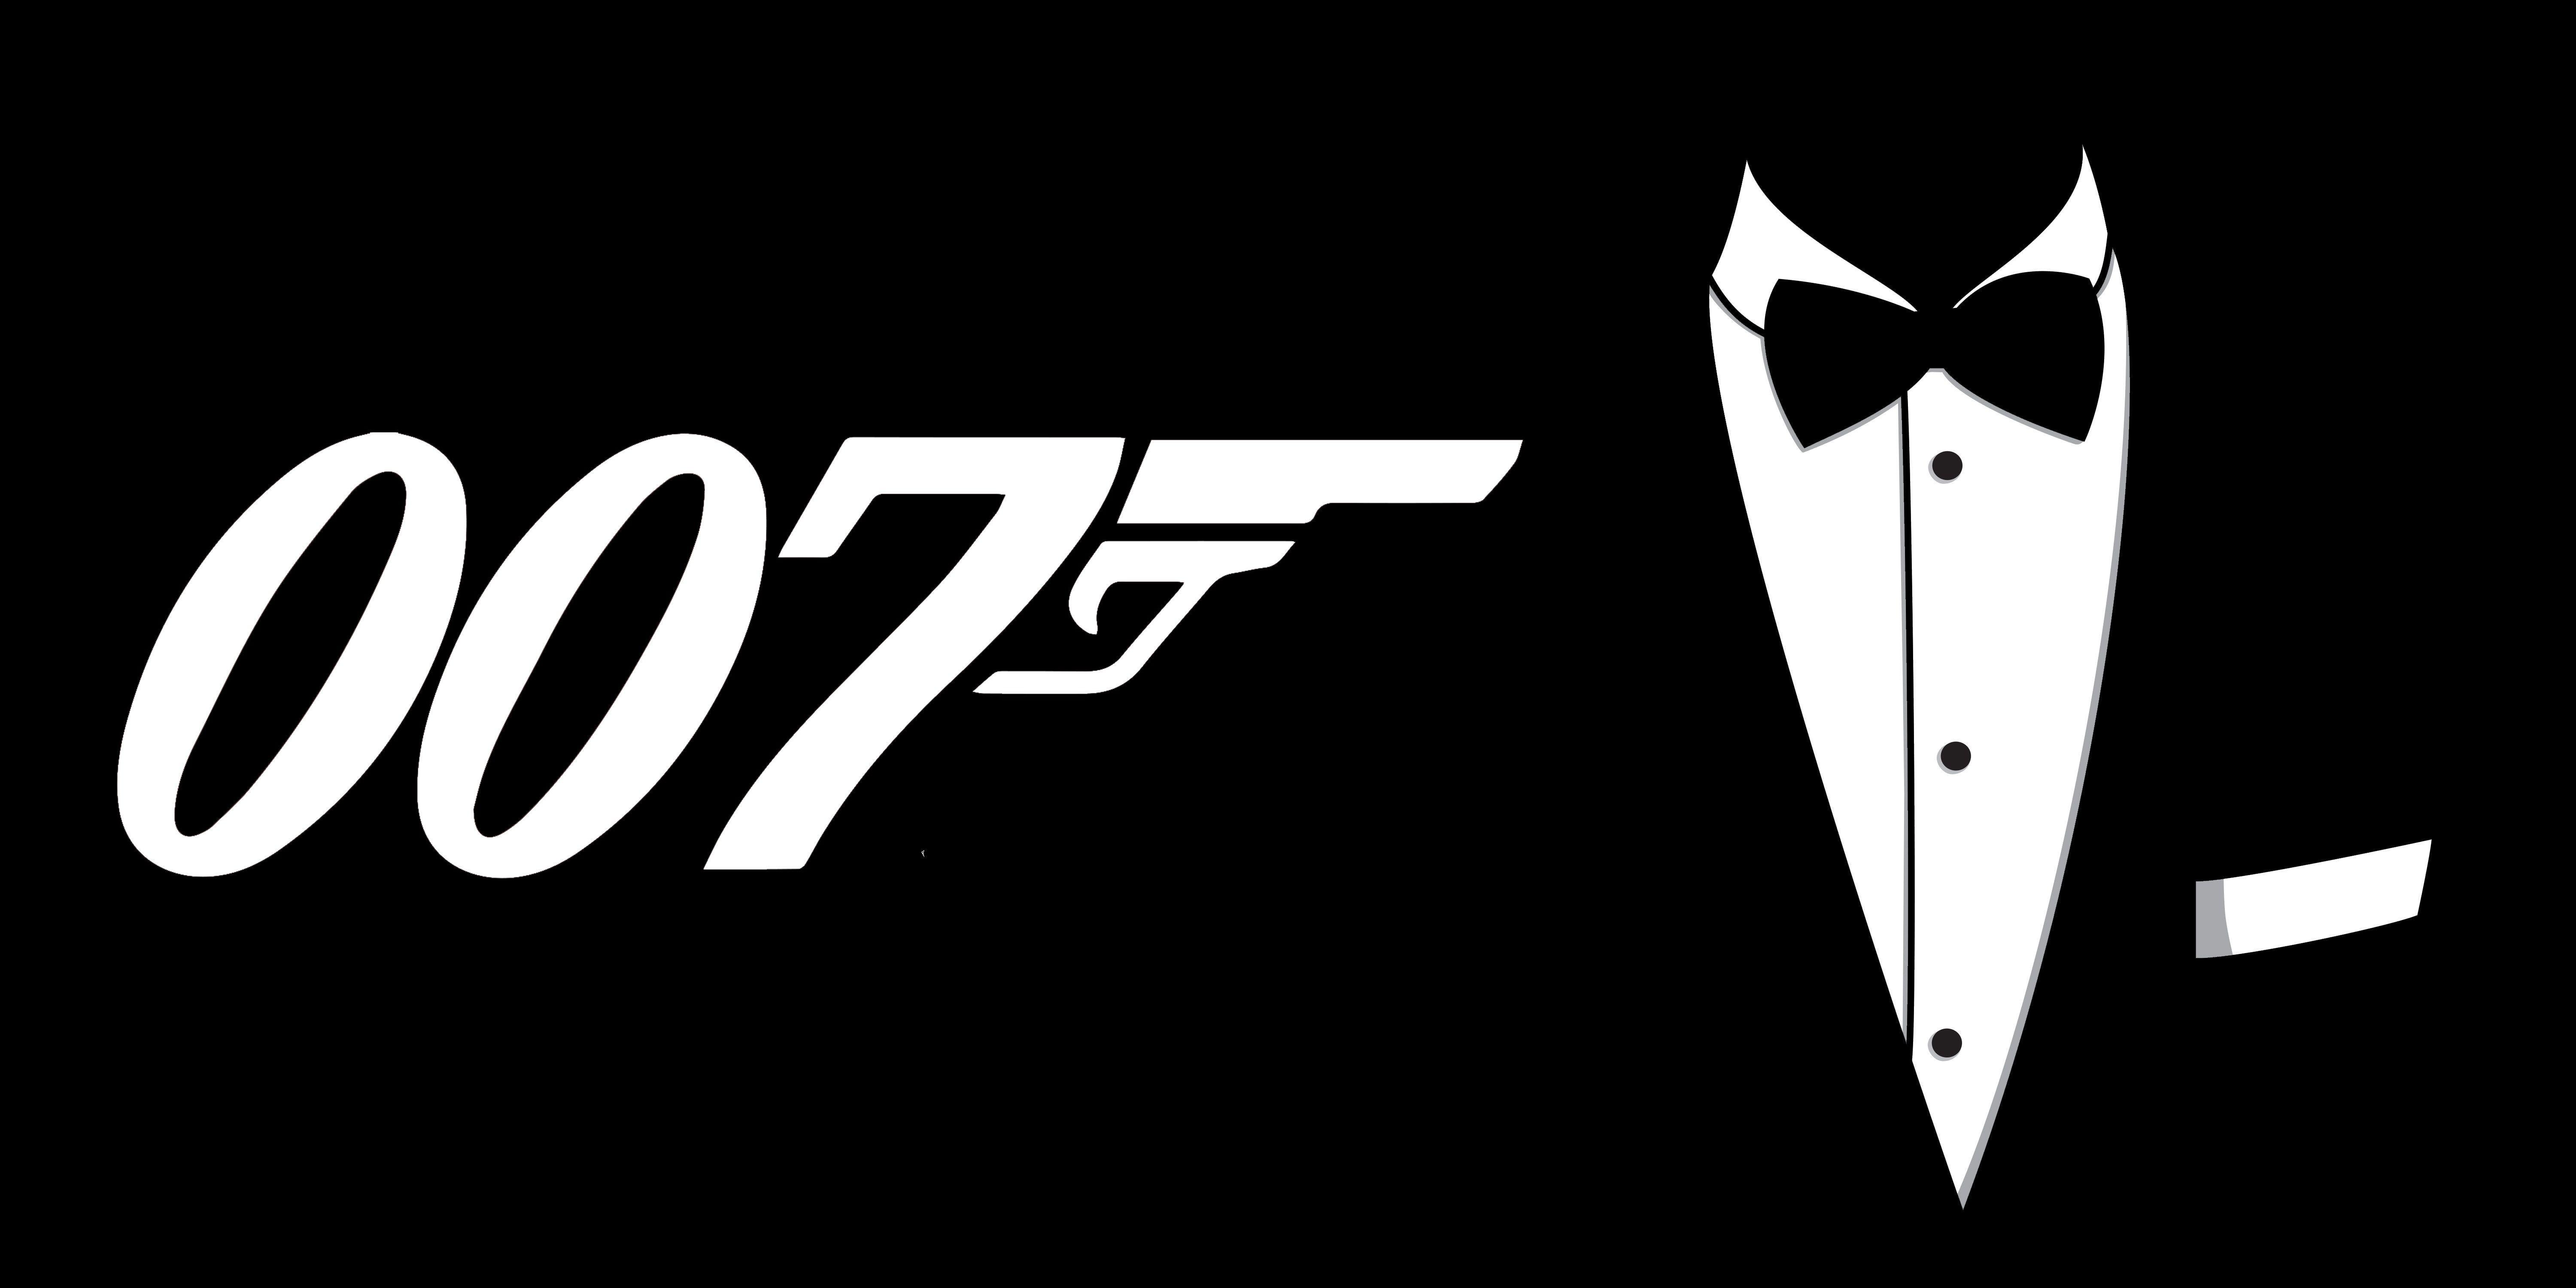 Sẵn sàng để làm mới giao diện desktop của bạn với hình nền James Bond 007 độc đáo và tinh tế? Hãy ghé qua và tải ngay bộ sưu tập của chúng tôi để tìm kiếm những hình ảnh ưng ý nhất cho màn hình desktop của bạn. 